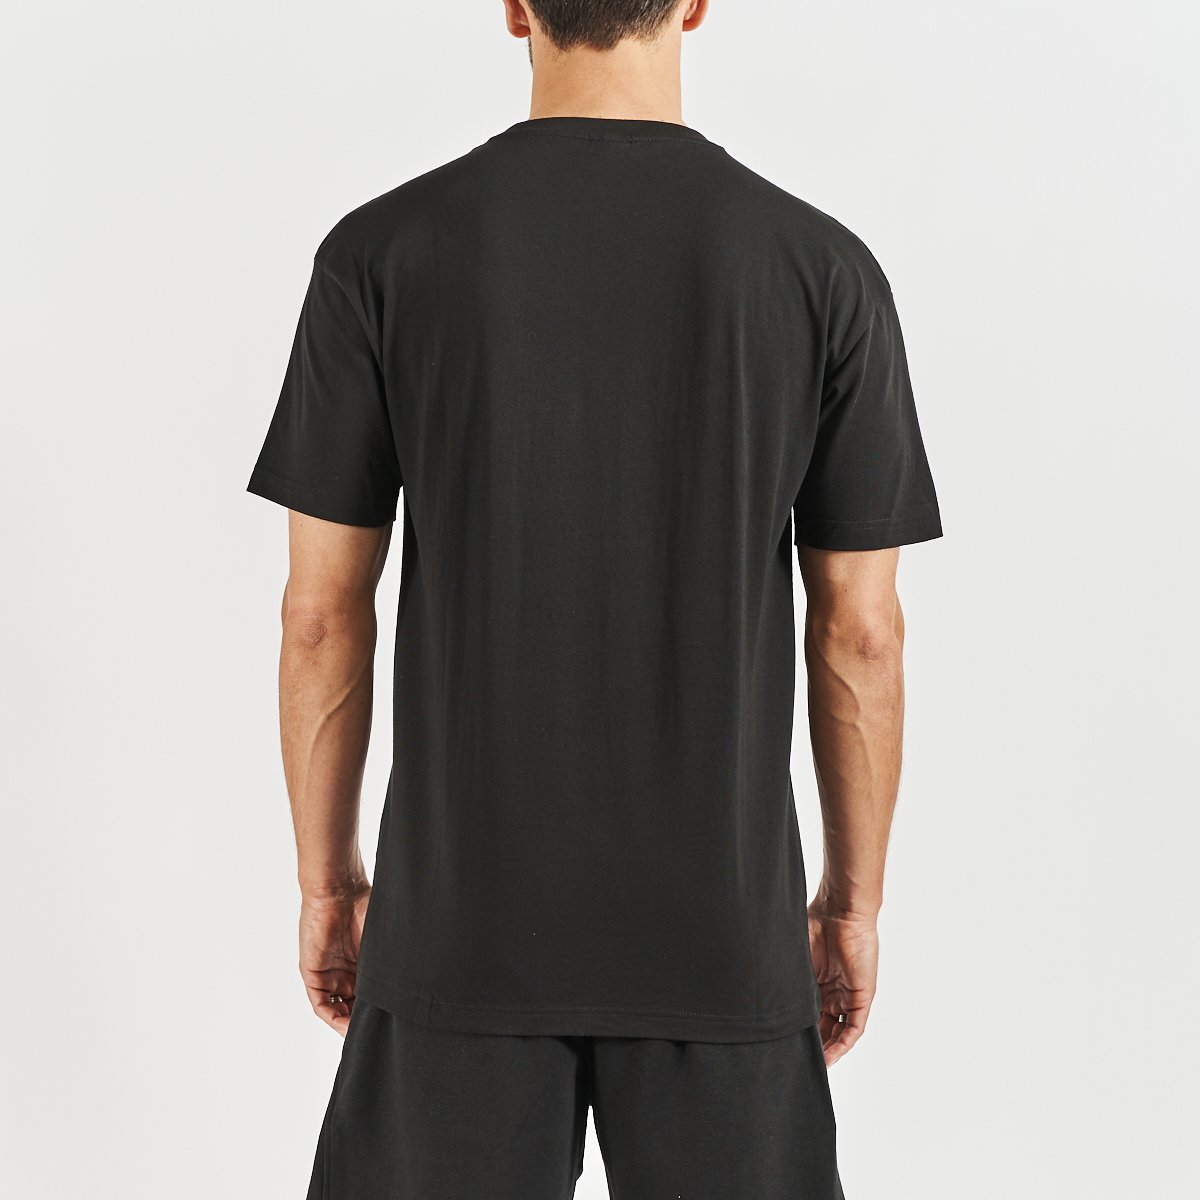 Camiseta Ecop hombre negro - Imagen 3